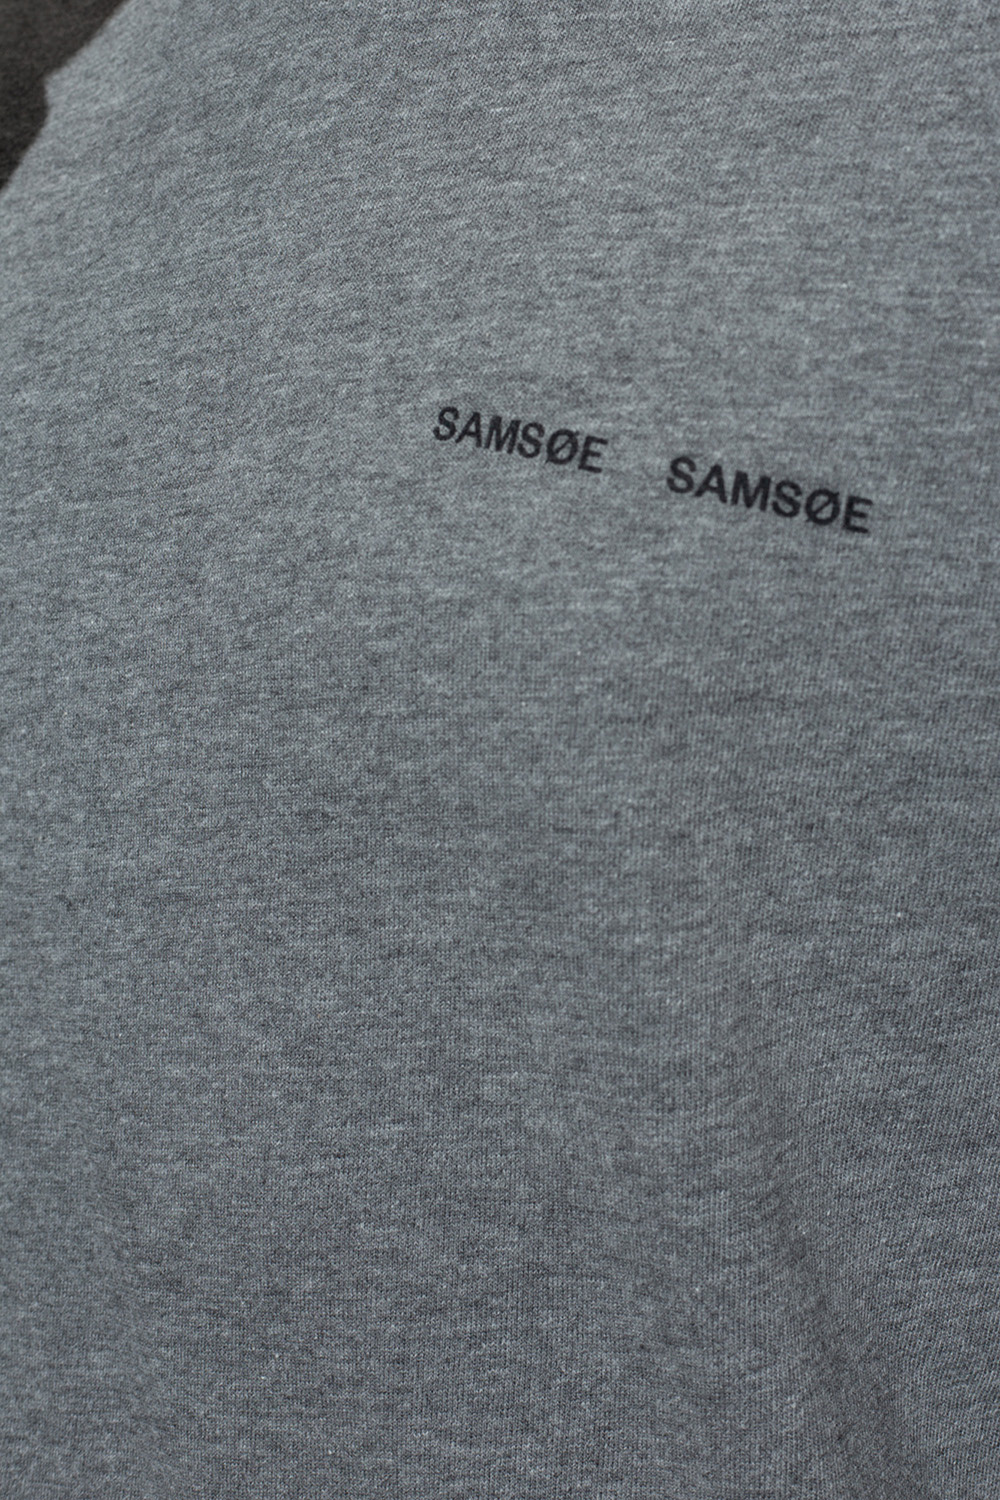 Samsøe Samsøe unfair athletics unfair classic label t shirt grey black